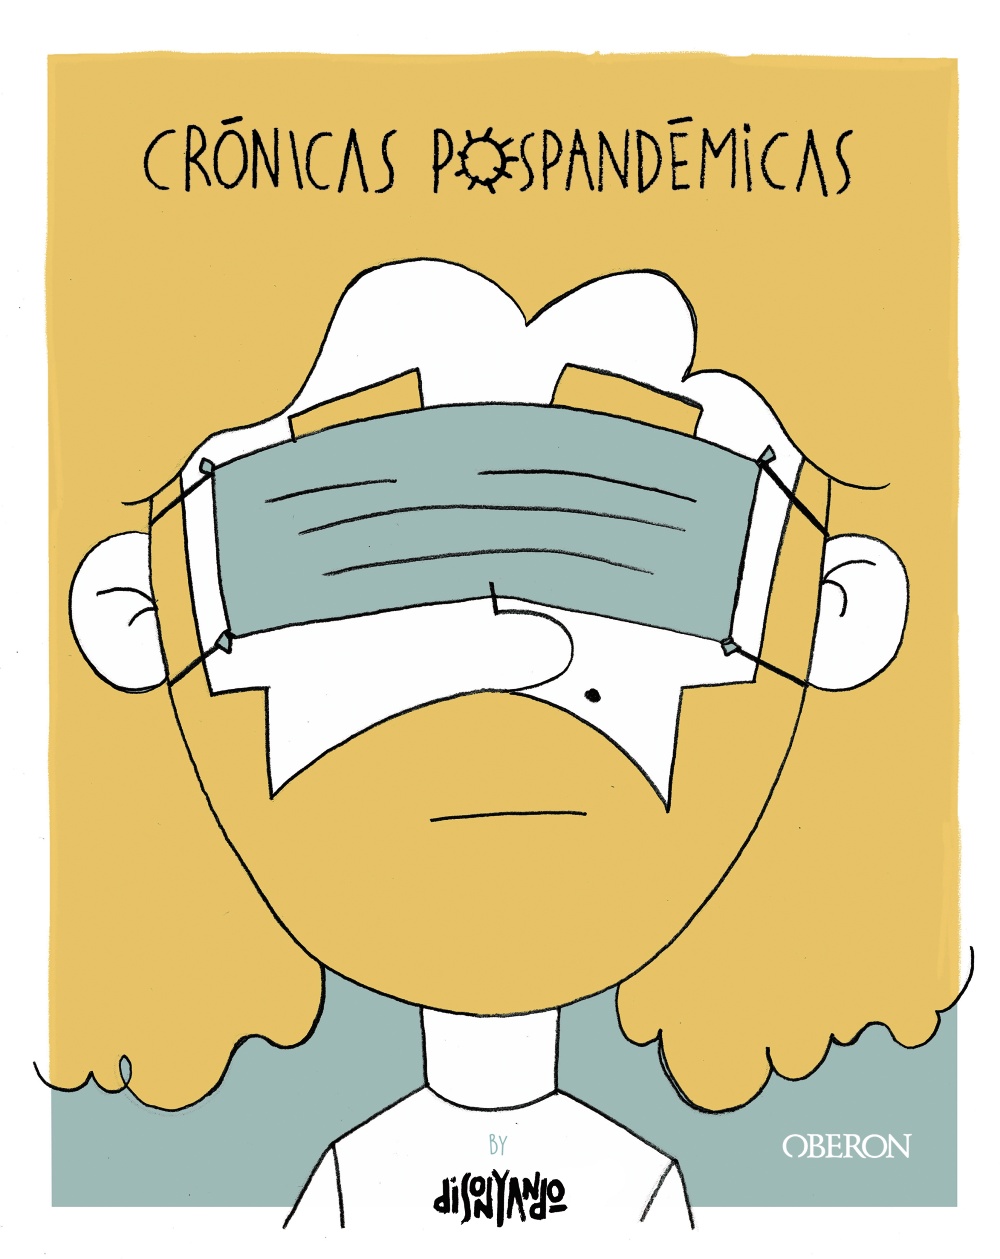 Crónicas pospandémicas